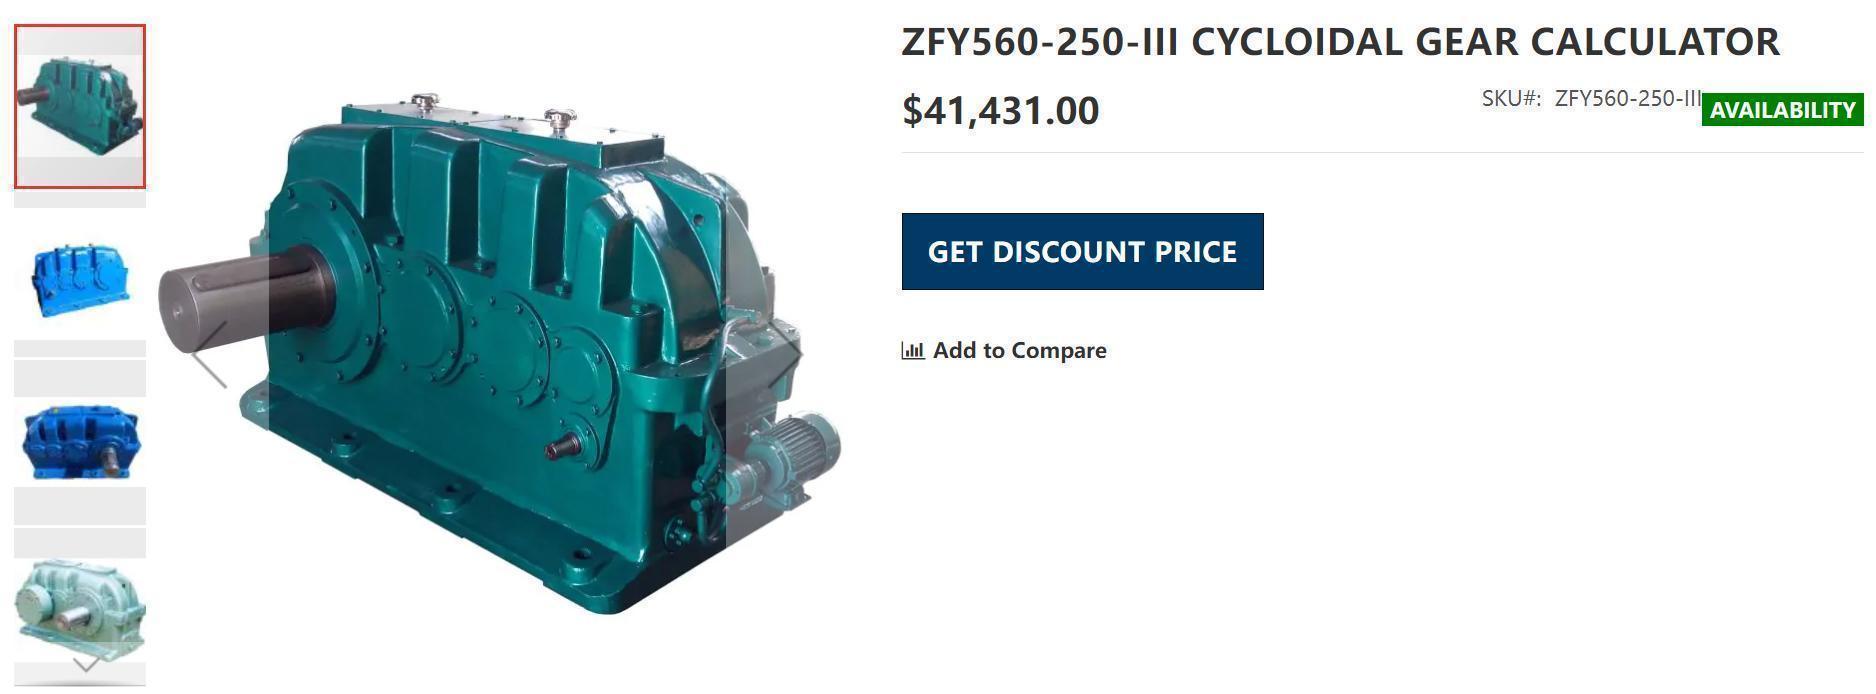 سازنده-ZFY560-250-III